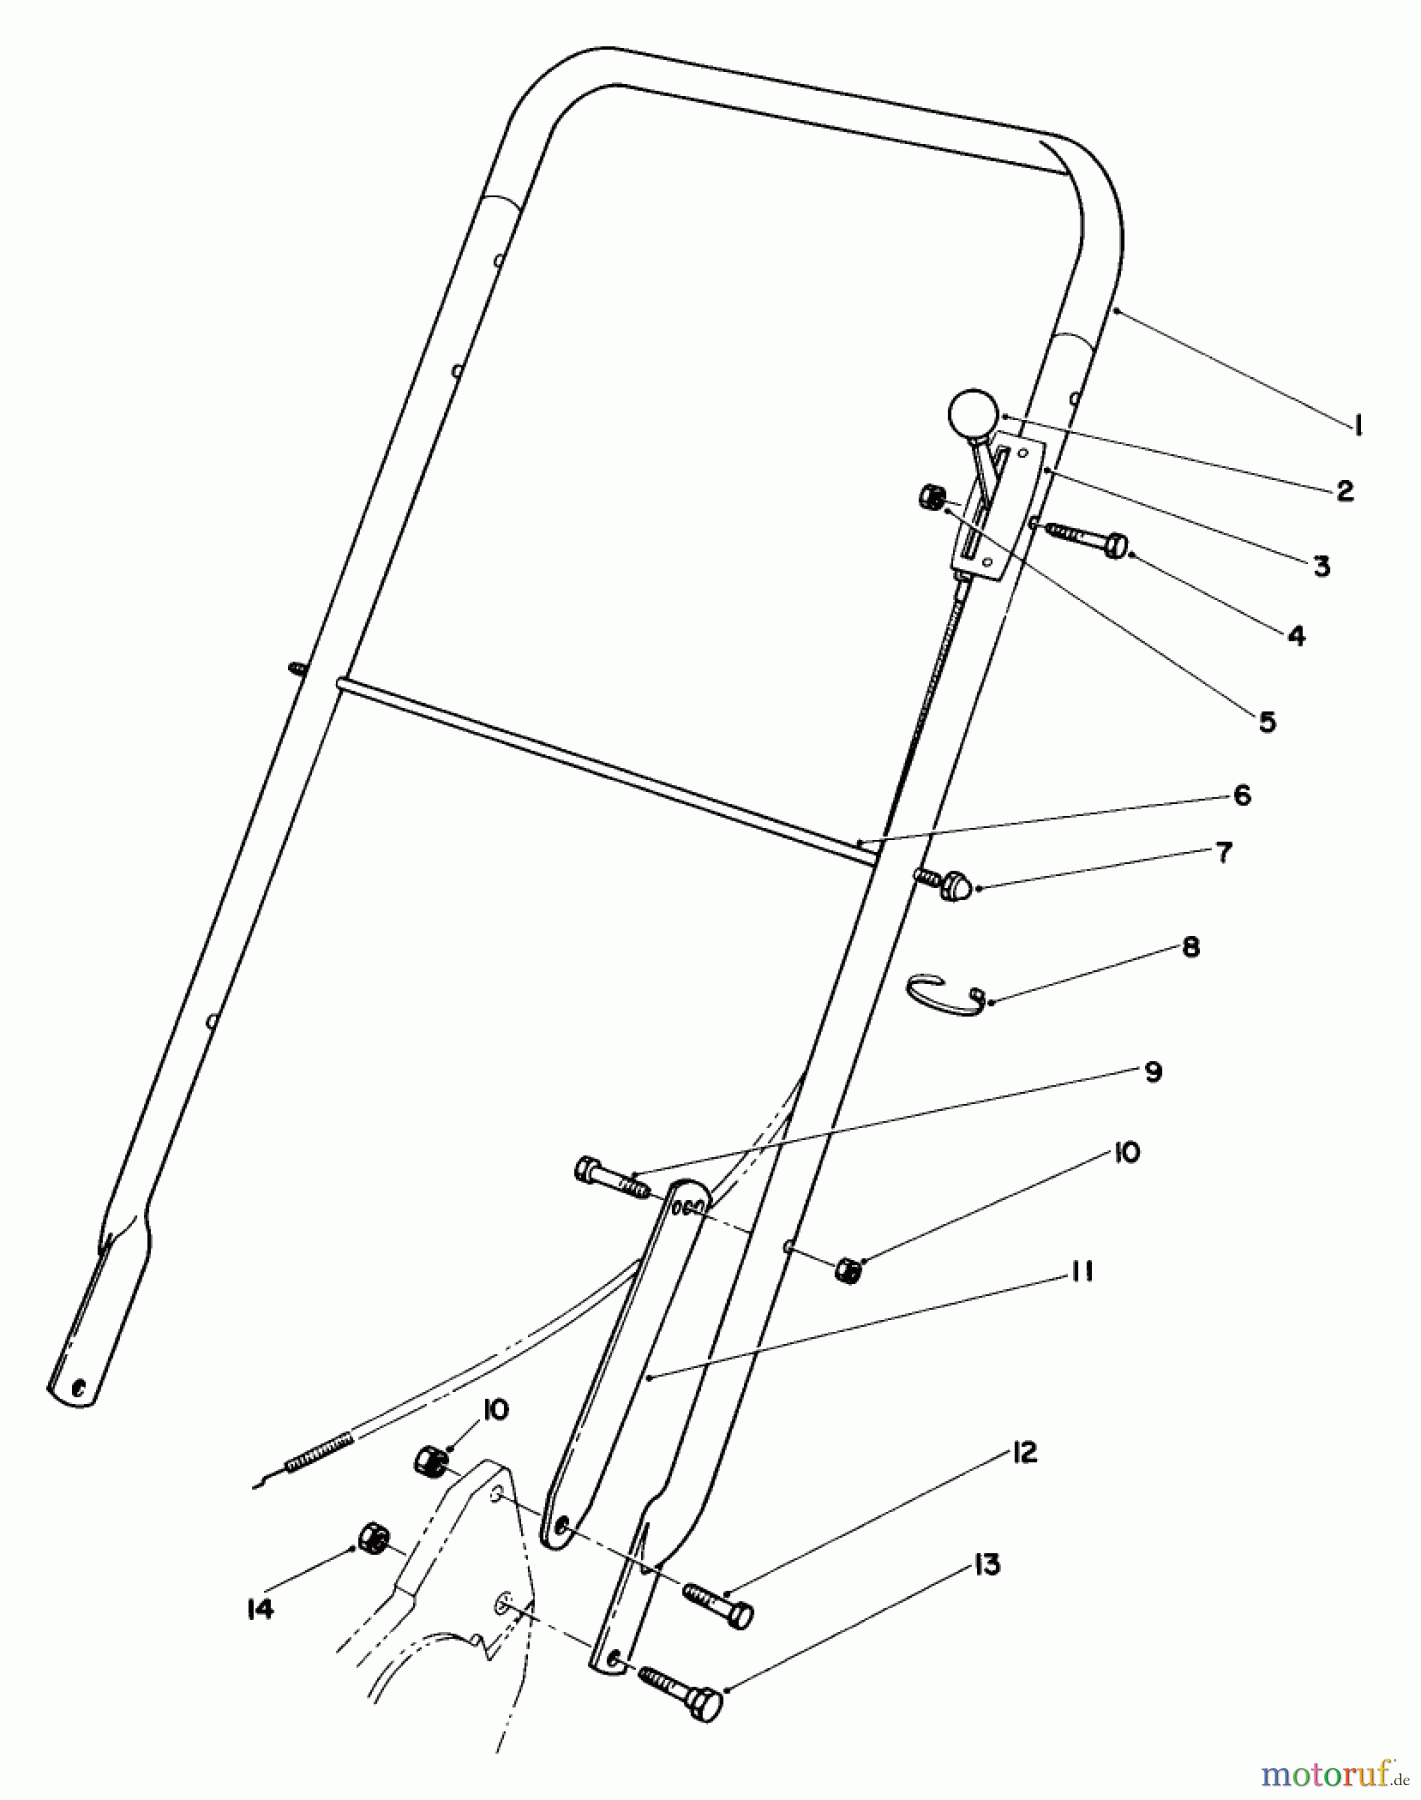  Toro Neu Mowers, Walk-Behind Seite 2 22030 - Toro Lawnmower, 1987 (7000001-7999999) HANDLE ASSEMBLY (MODEL 22030)